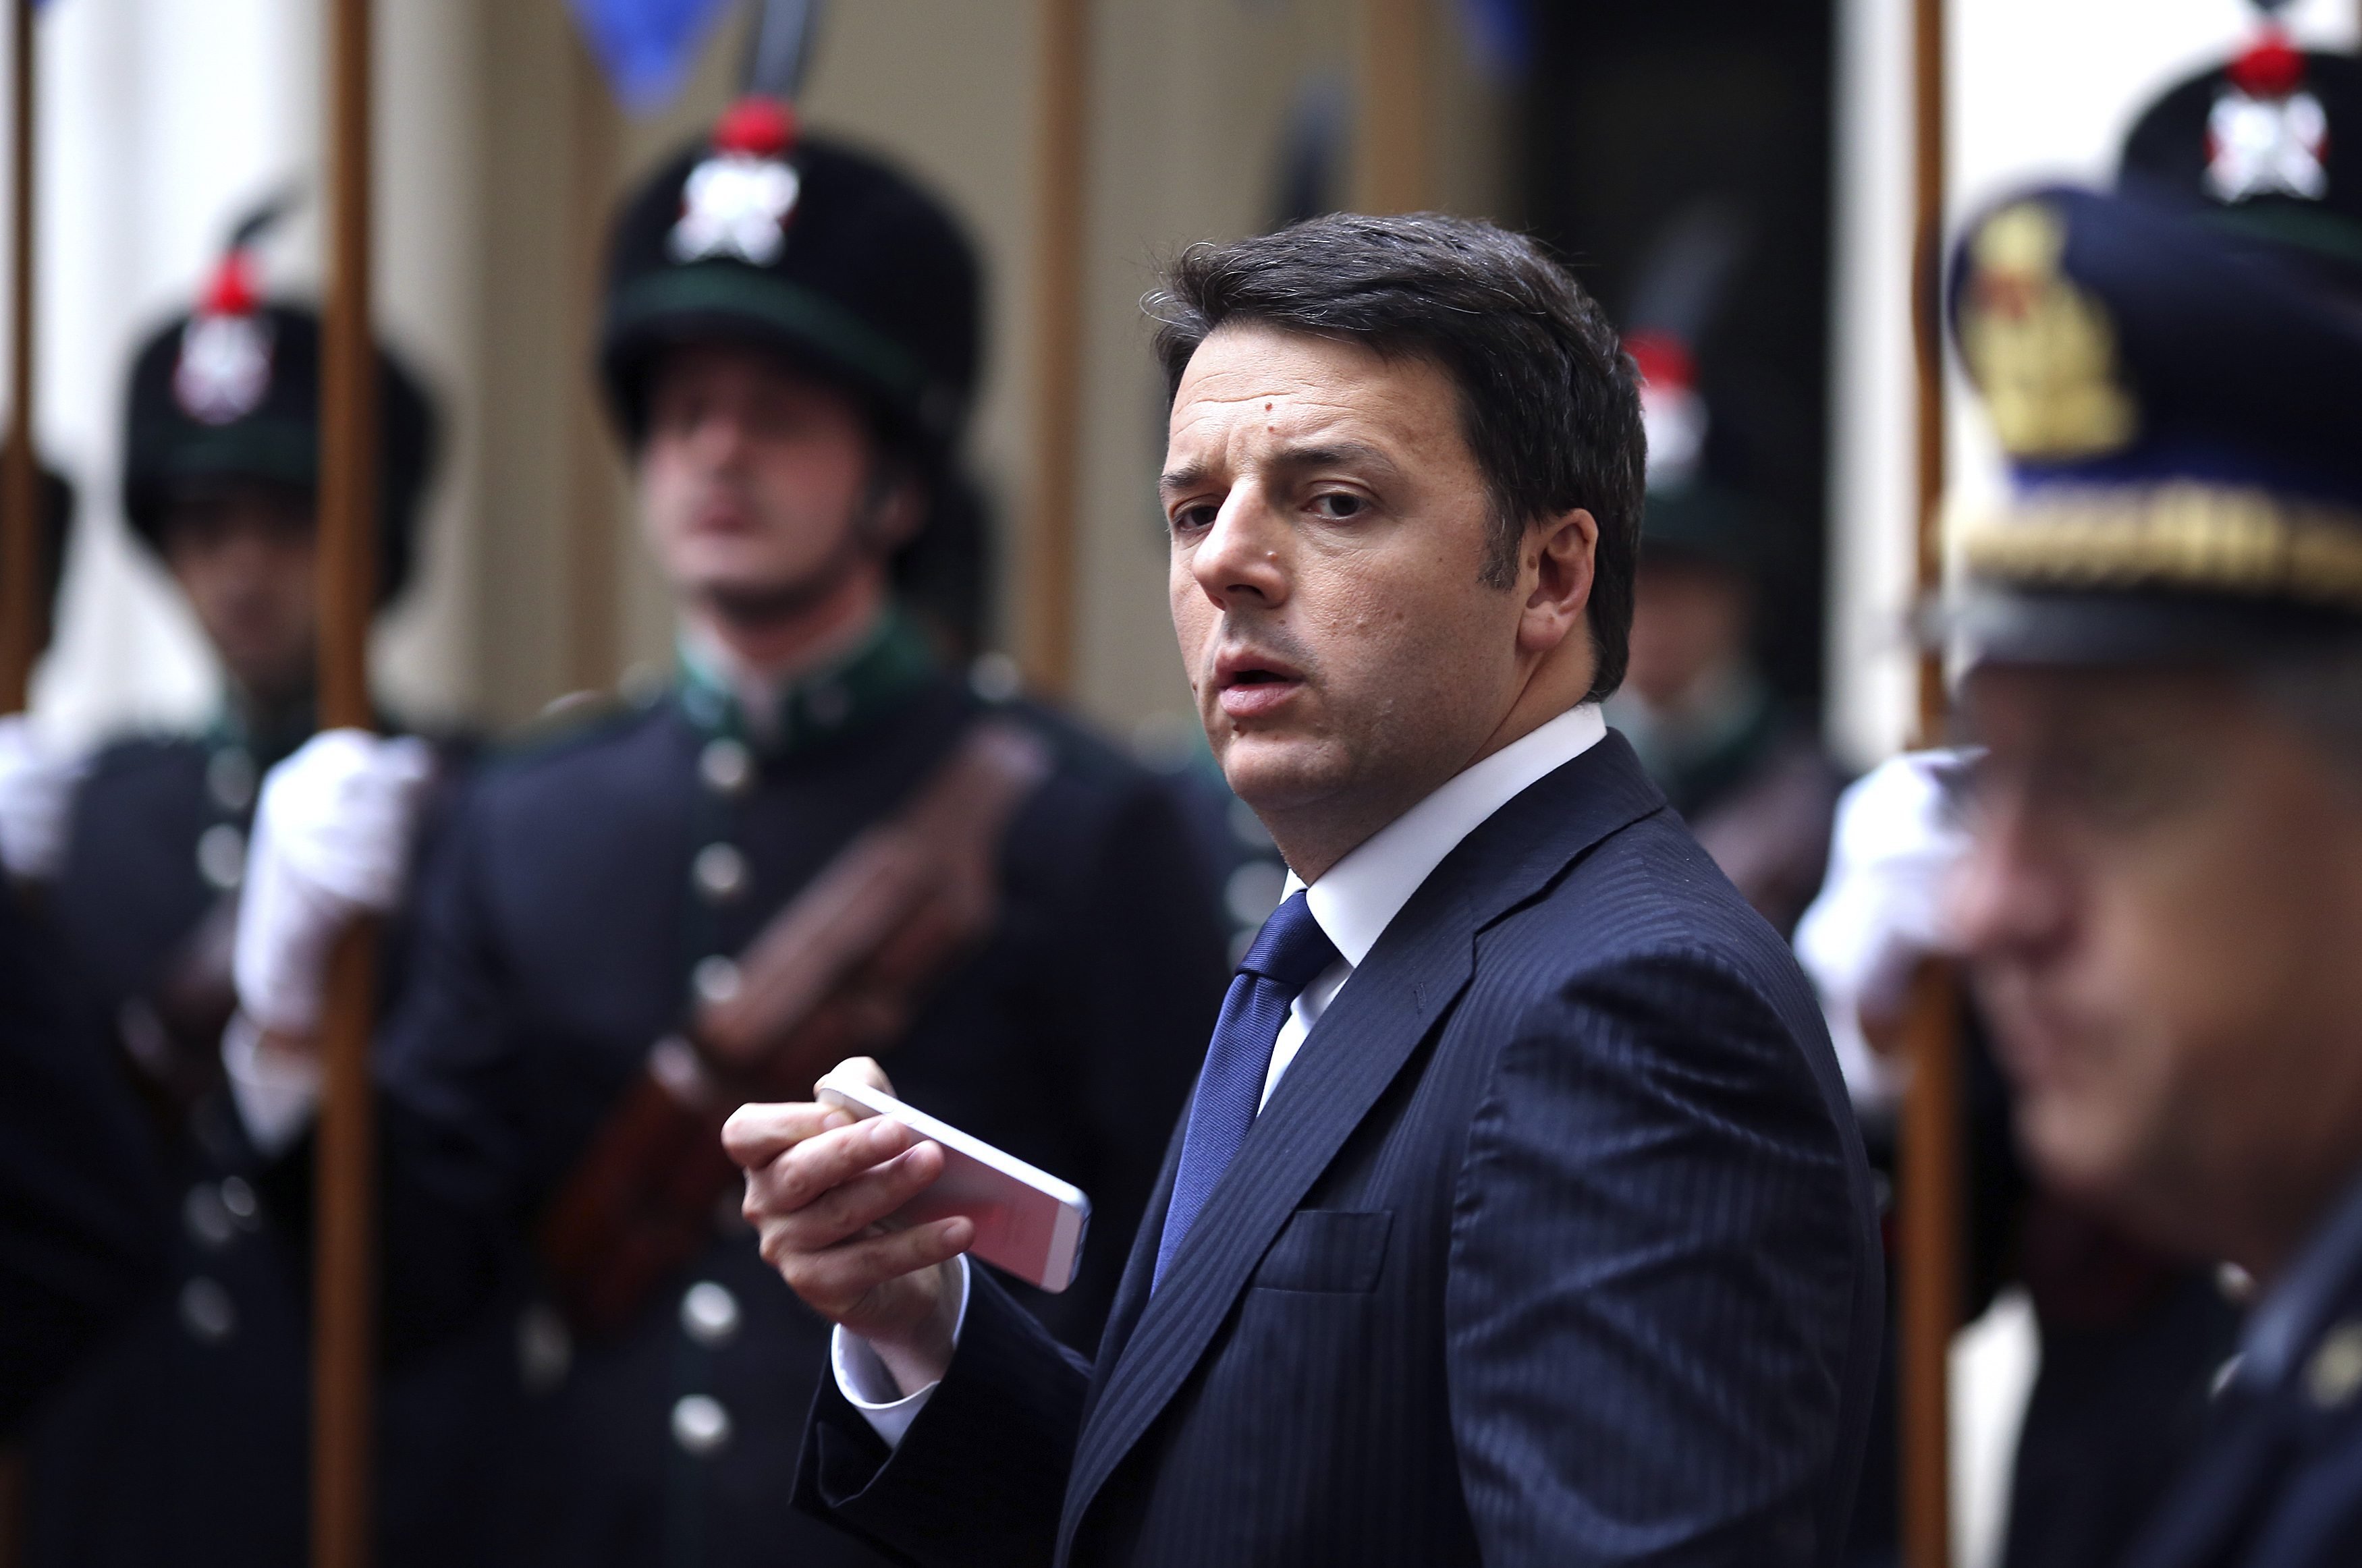 Πρόωρες εκλογές στην Ιταλία ζητούν στελέχη του Ρέντσι